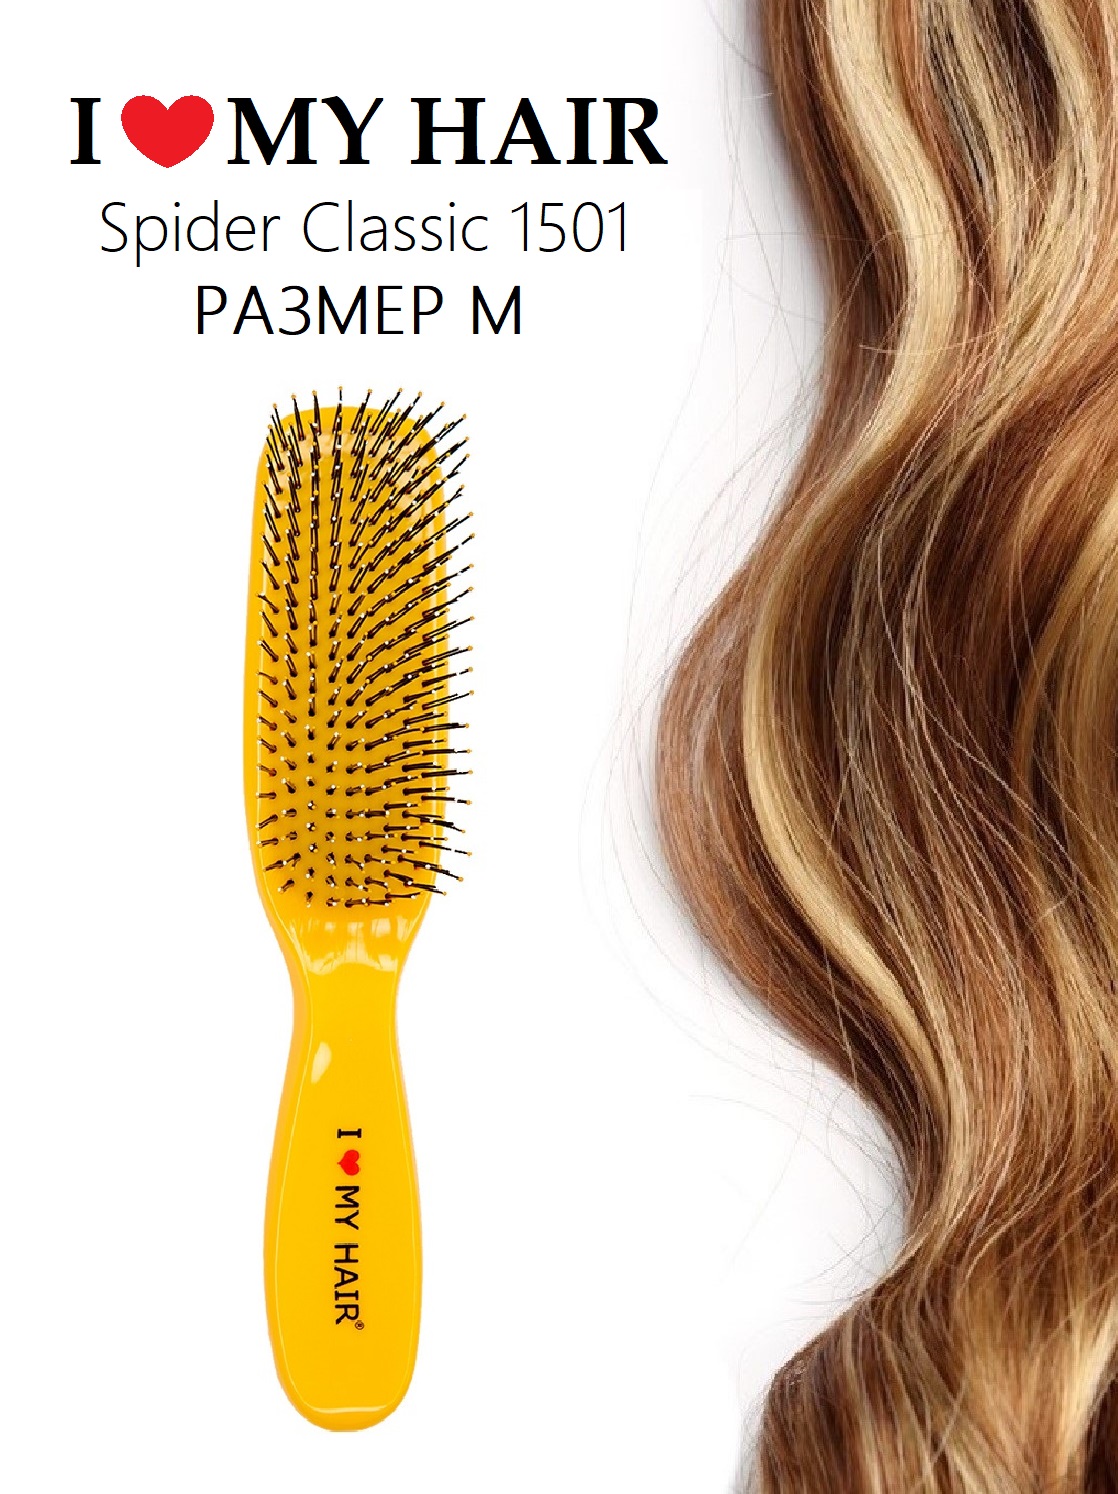 Щетка парикмахерская расческа для волос ILMH Spider Classic 1501 желтая размер М щетка charites трехрядная для начеса волос натуральная щетина пластик